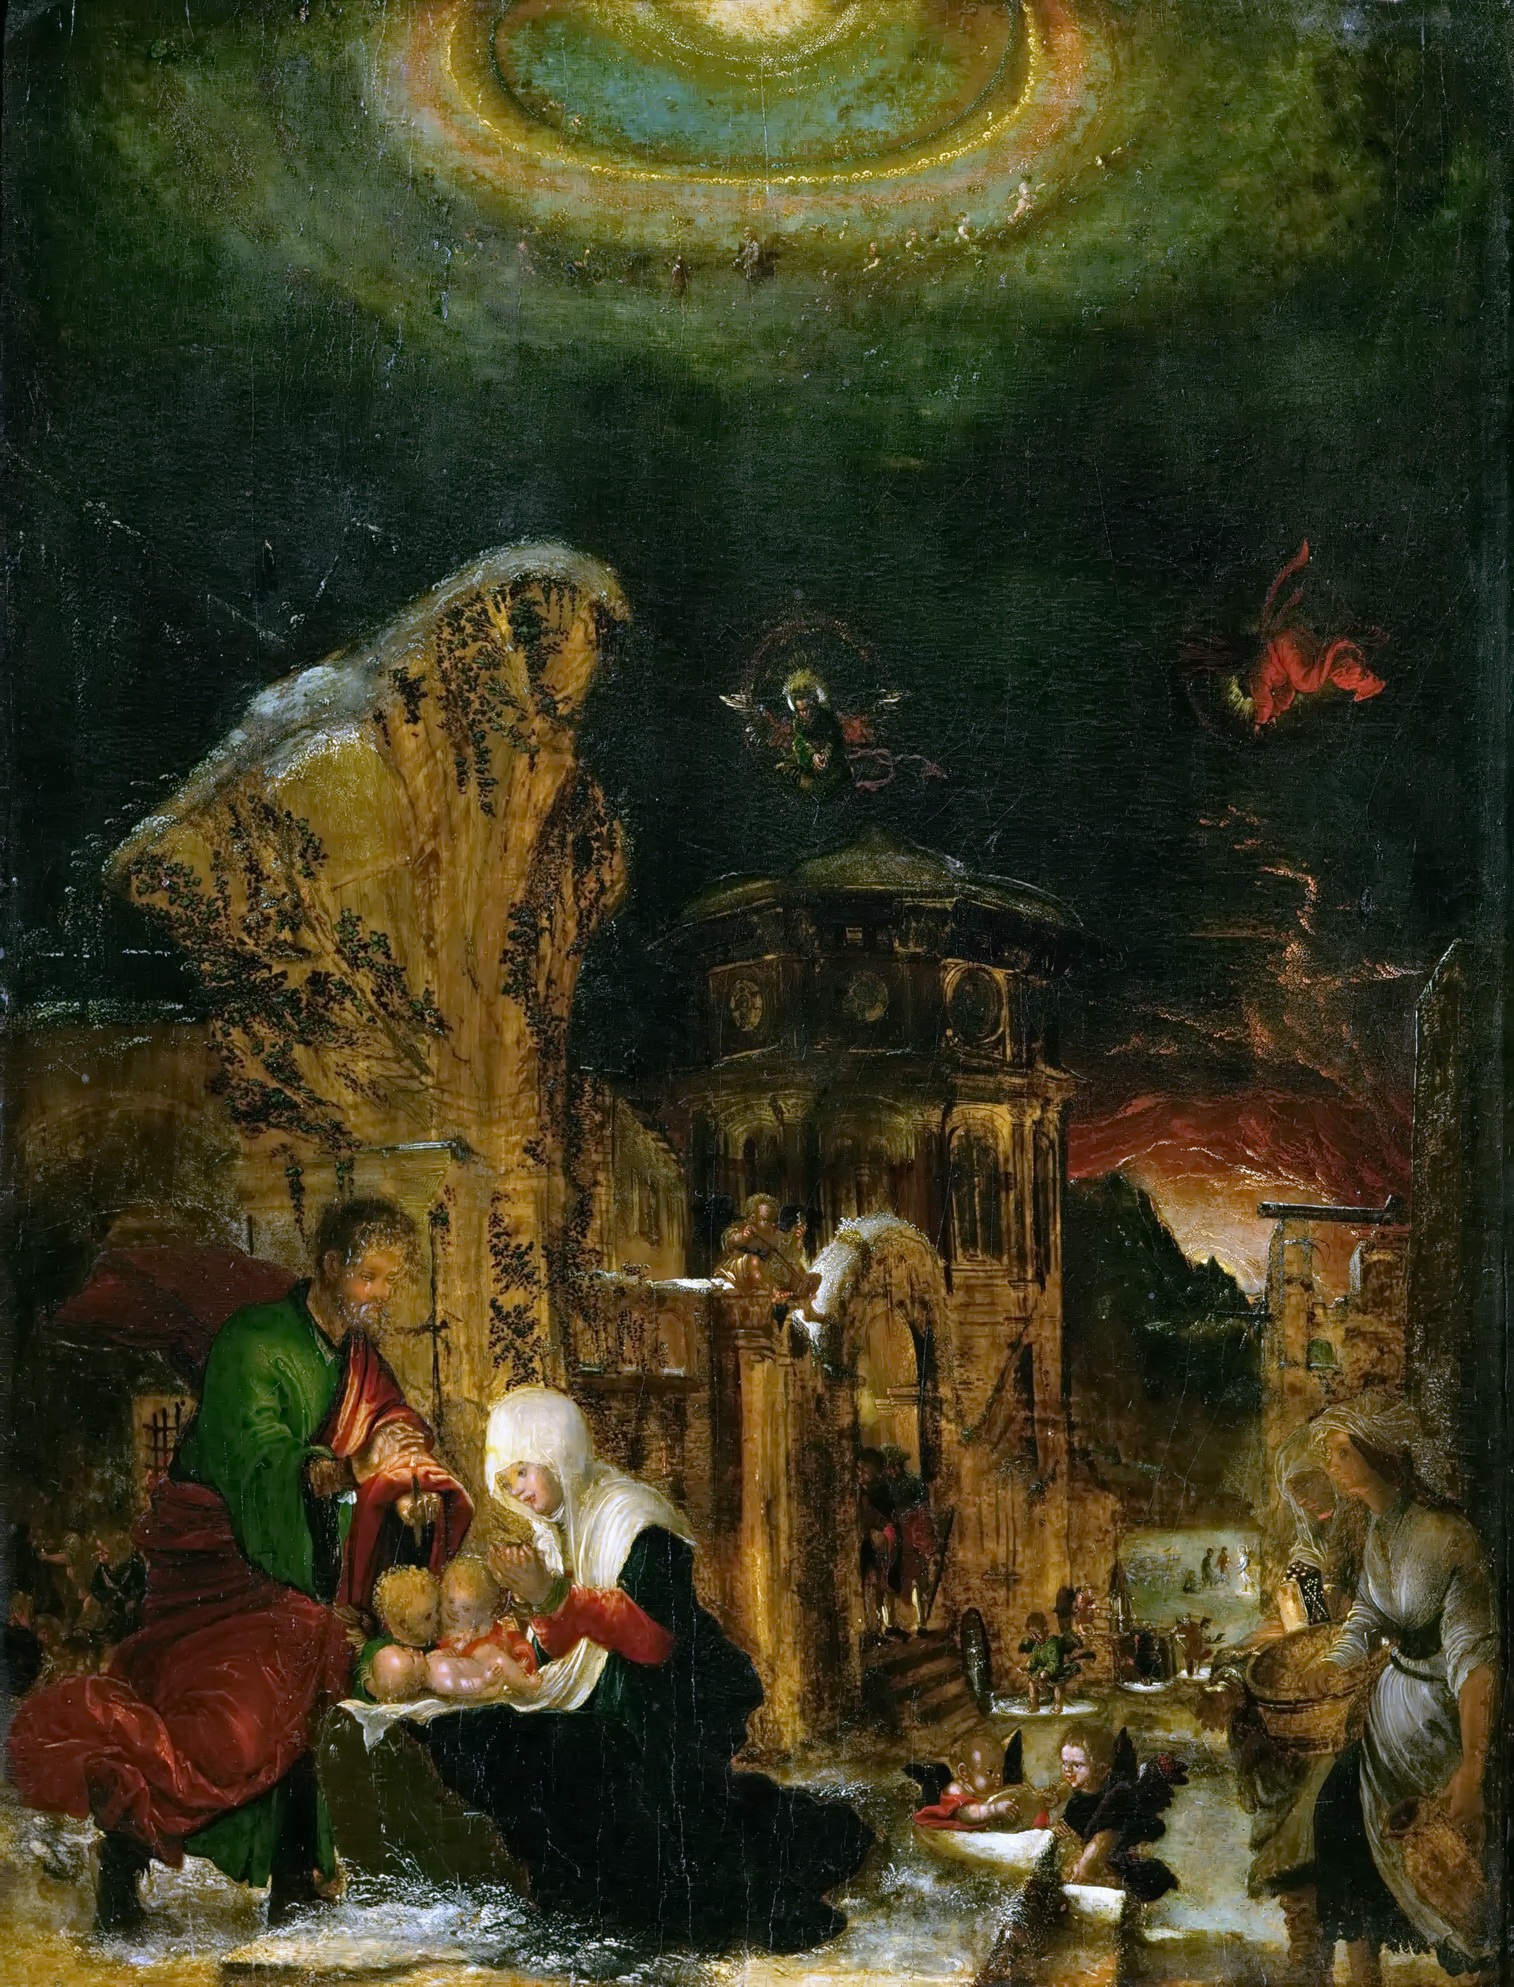 Альбрехт Альтдорфер. "Святая ночь". 1518-1520. Музей истории искусств, Вена.